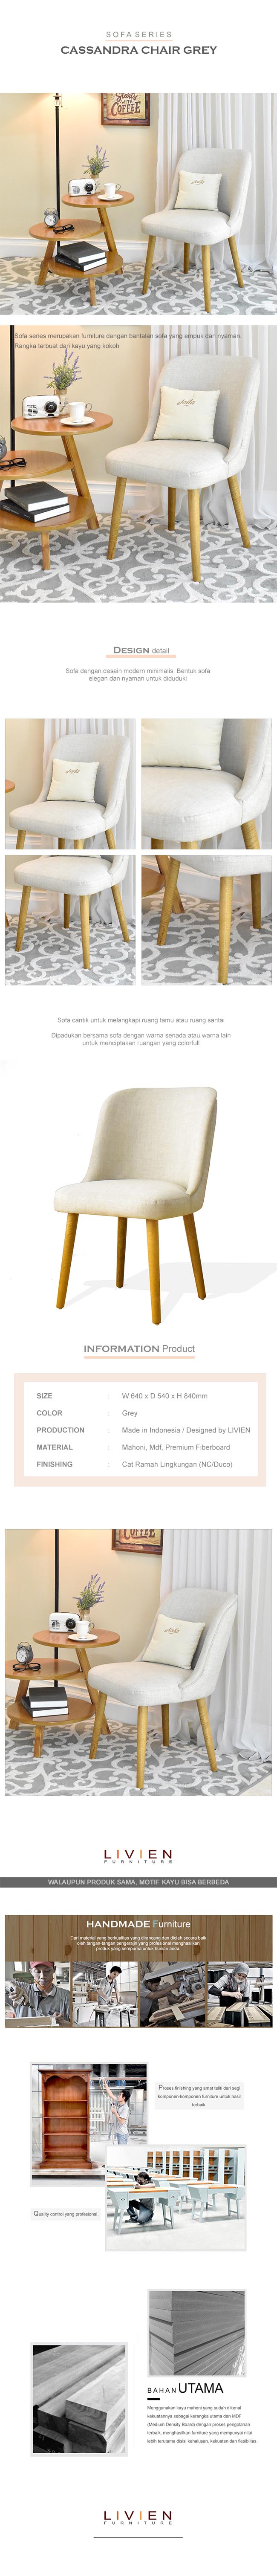 Chair Sofa